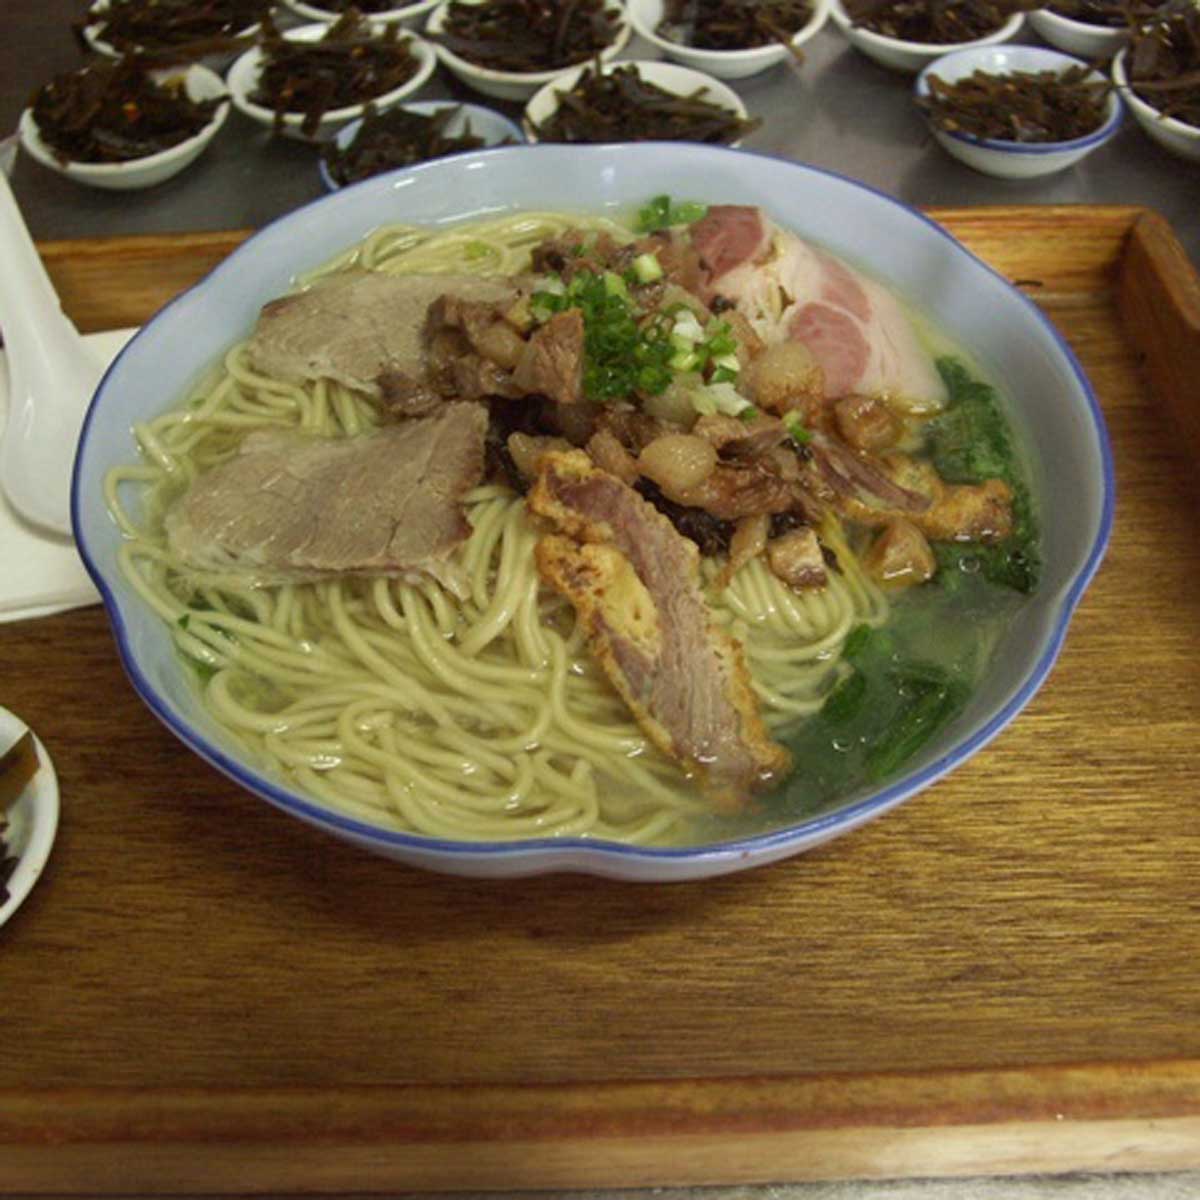 Soupe chinoise au porc - Recette Ptitchef